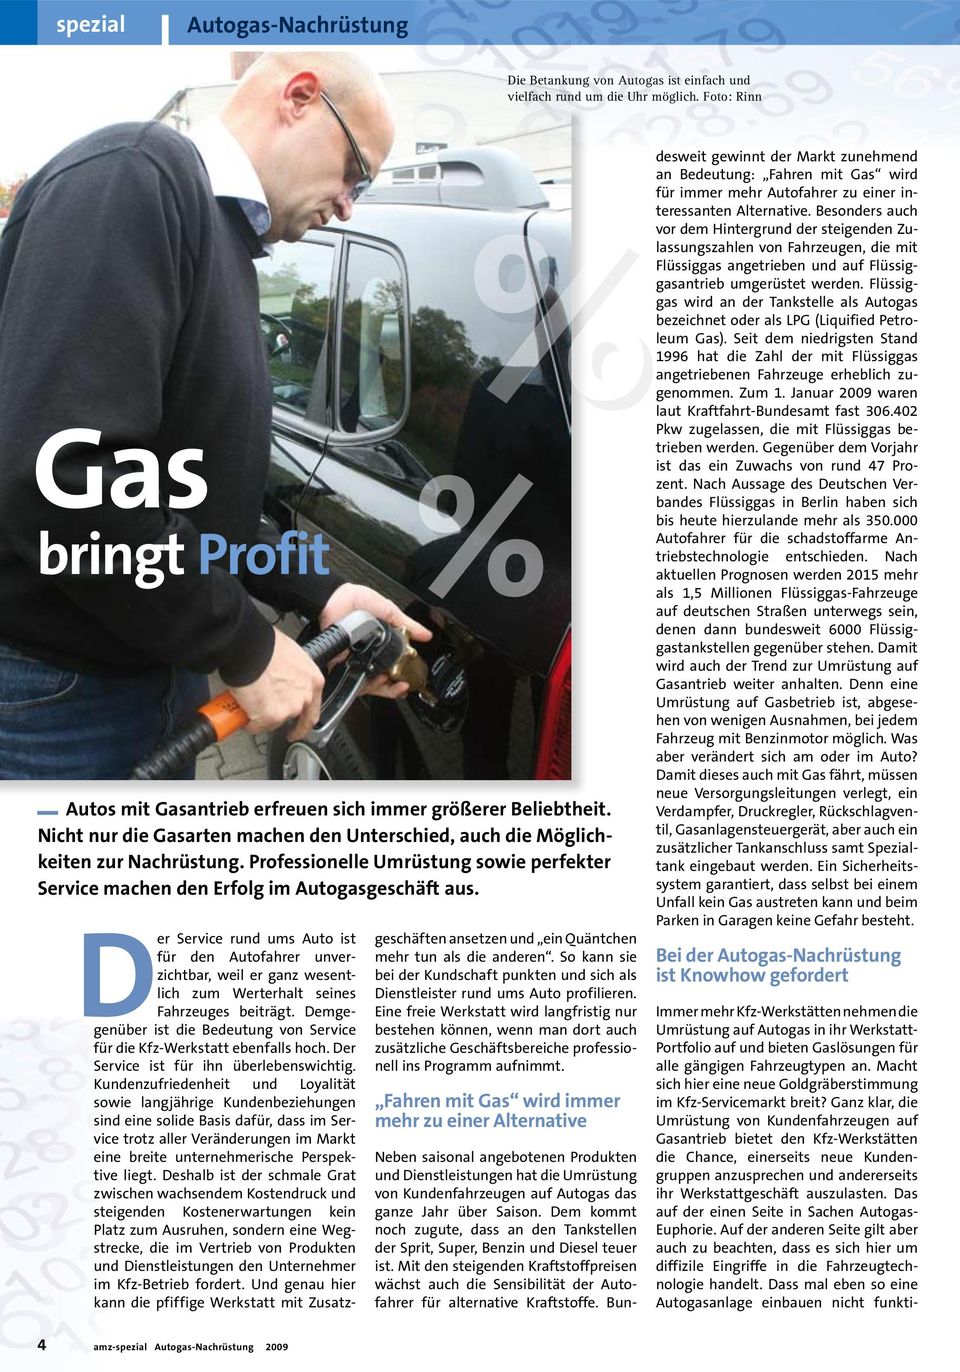 Professionelle Umrüstung sowie perfekter Service machen den Erfolg im Autogasgeschäft aus.